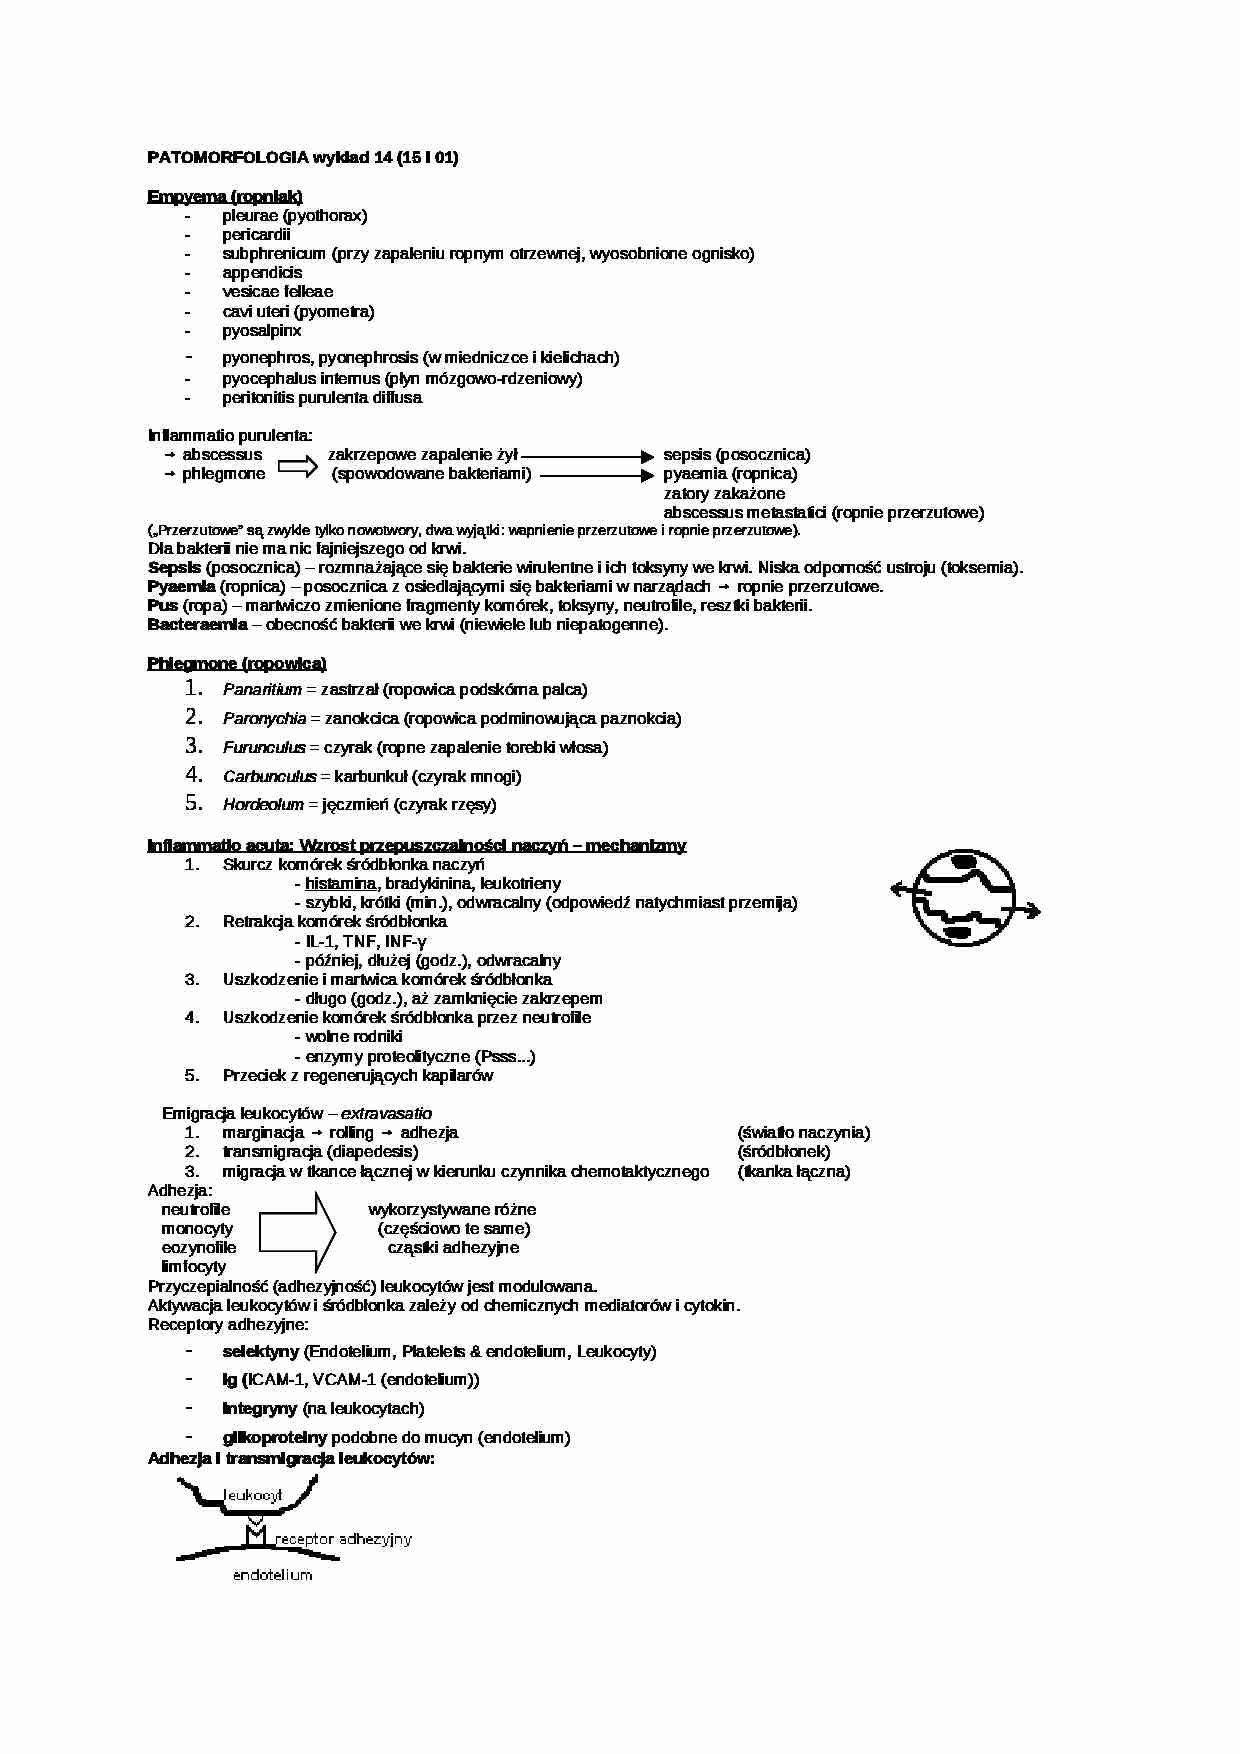 Patomorfologia - wykład 13 - strona 1